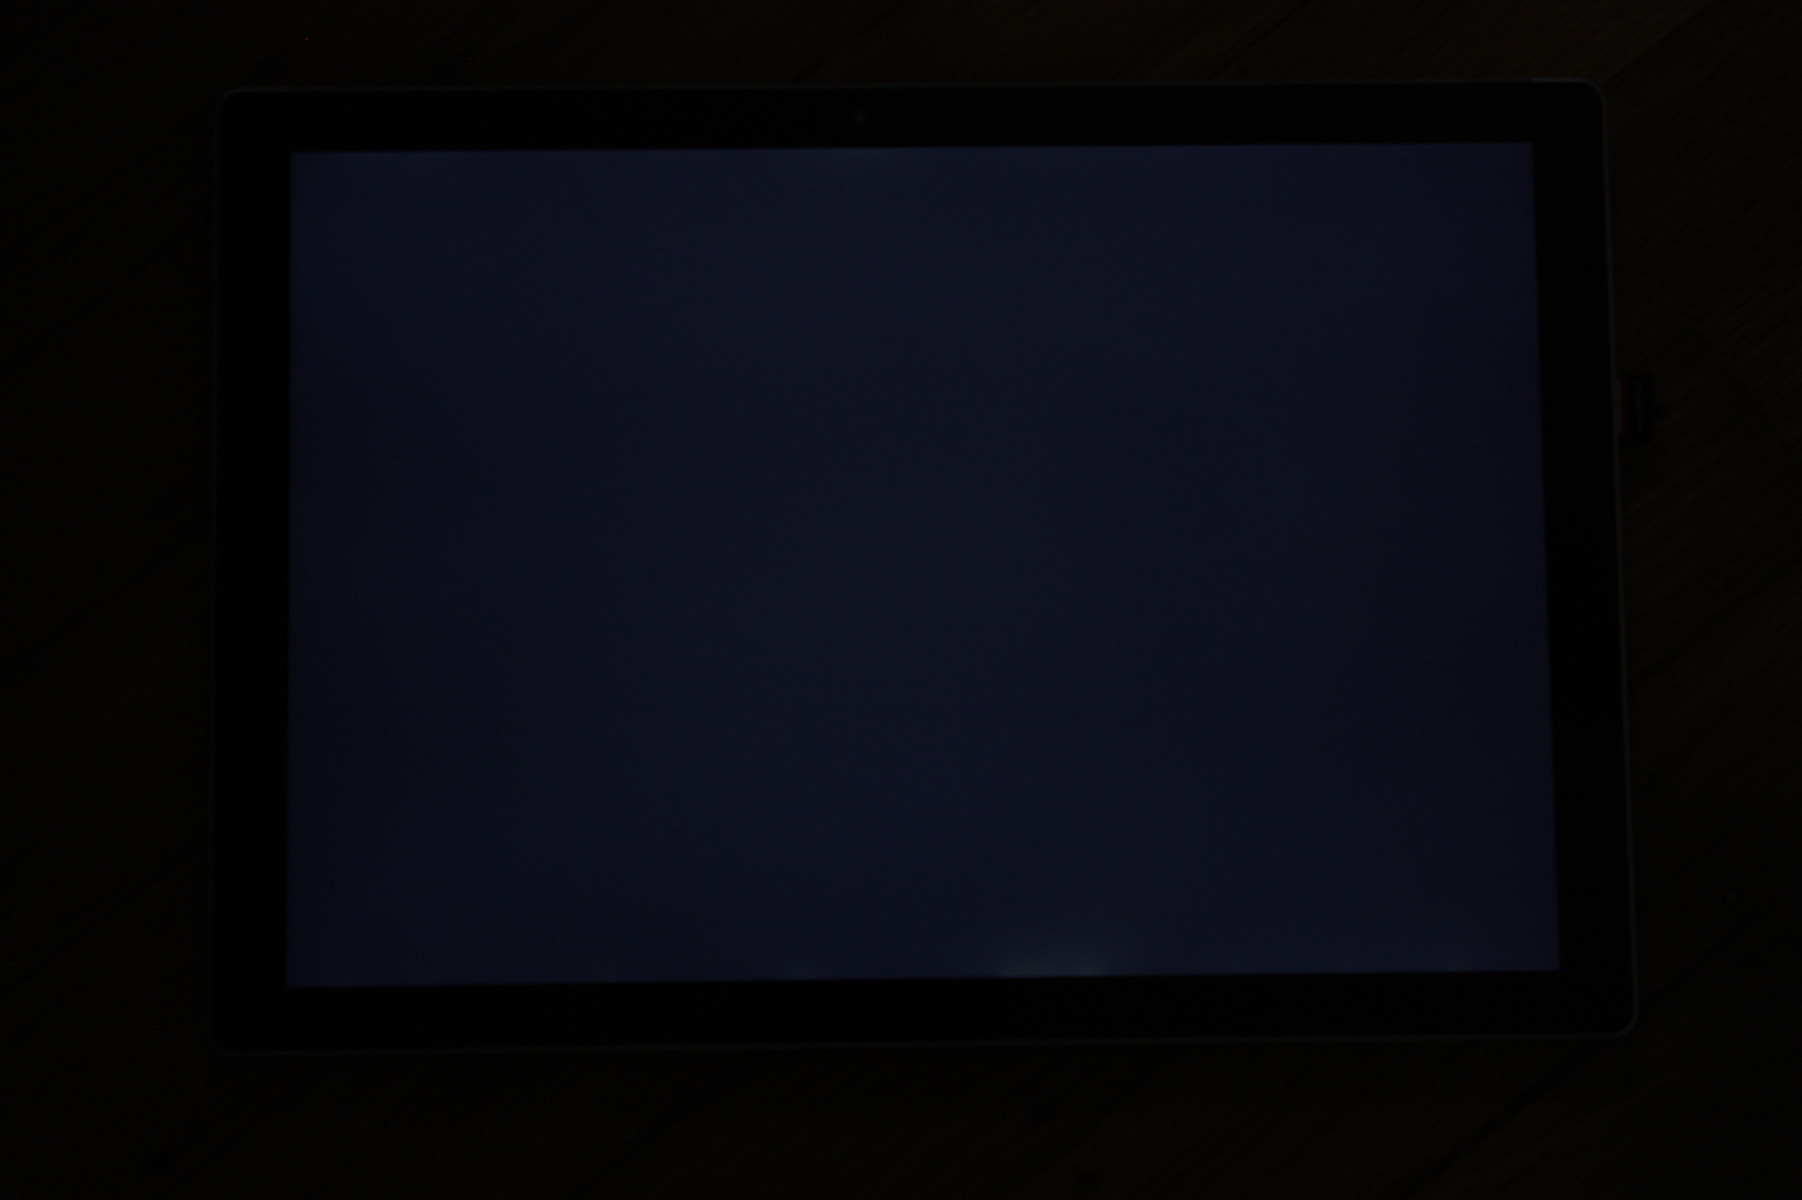 Youtube с выключенным экраном. Черный экран монитора. Черный монитор. Телевизор черный экран. Экран выключенного монитора.